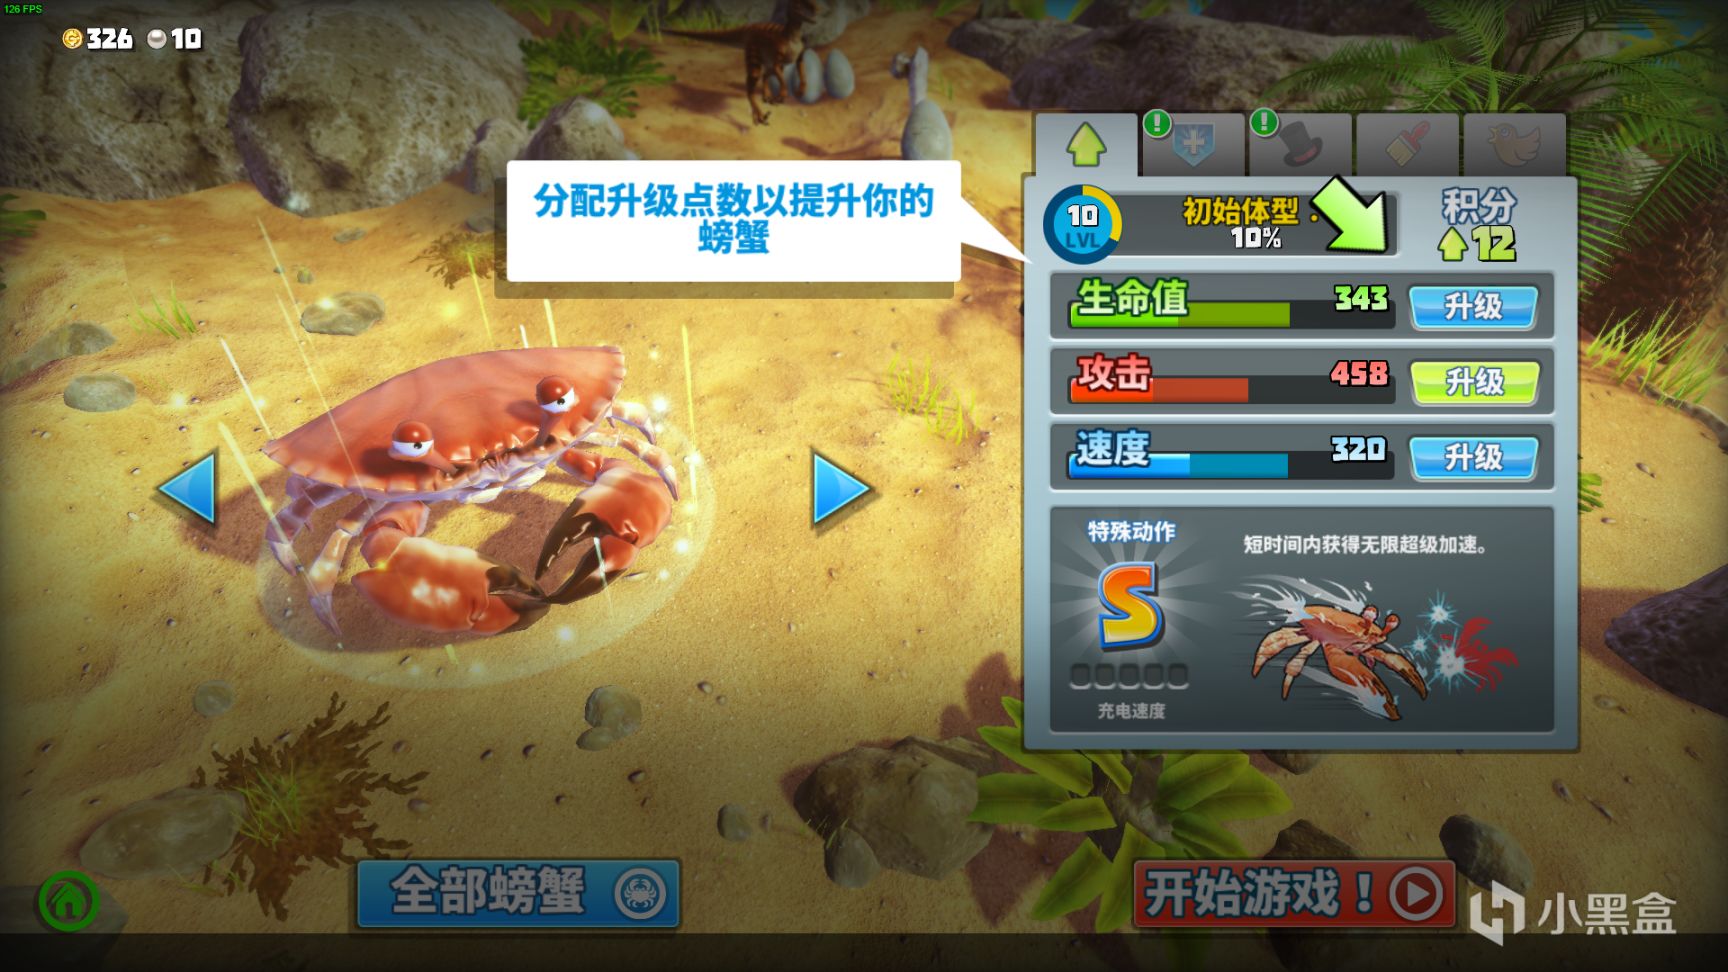 【PC游戏】steam免费有趣游戏《King of Crabs 螃蟹之王》无限欢乐，来吖 一起快乐鸭~-第25张